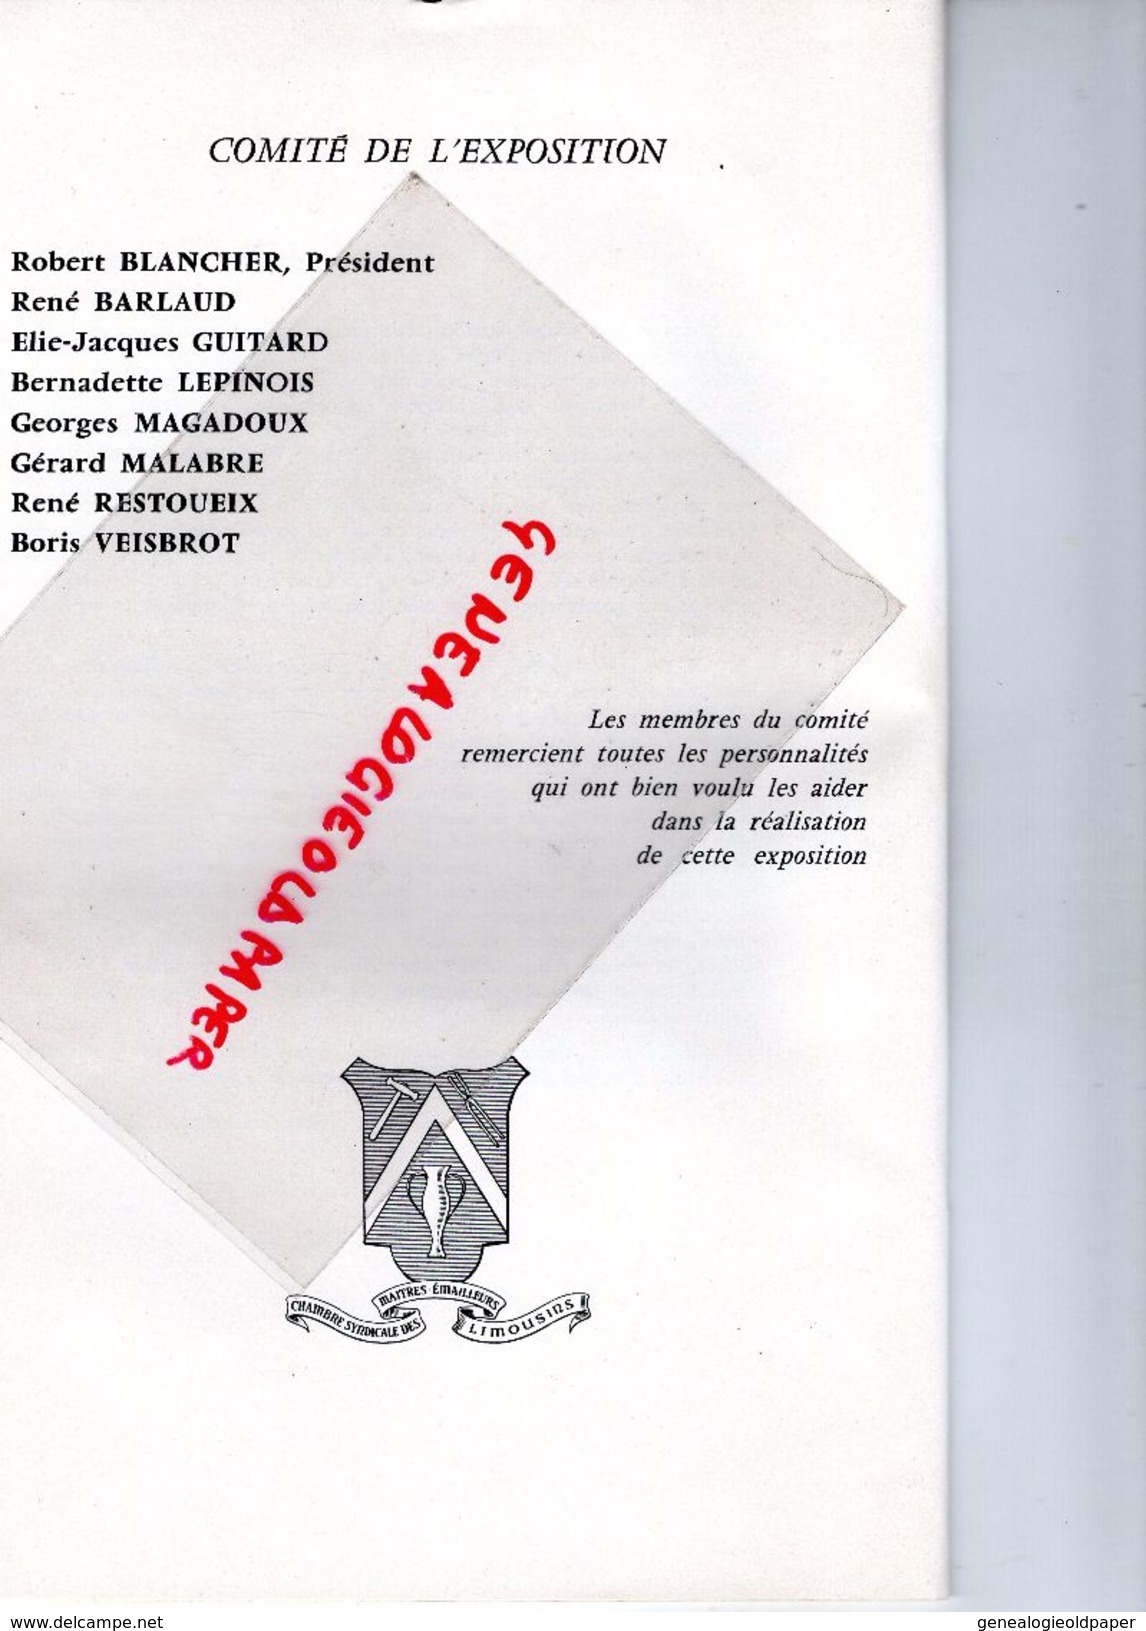 87- LIMOGES- PROGRAMME EMAUX LIMOUSINS -2E SALON 1969-CLANCIER-MARGERIT-BLANCHER-HAVILAND-BETOURNE-BARLAUD-FAURE-KLEIN - Programme